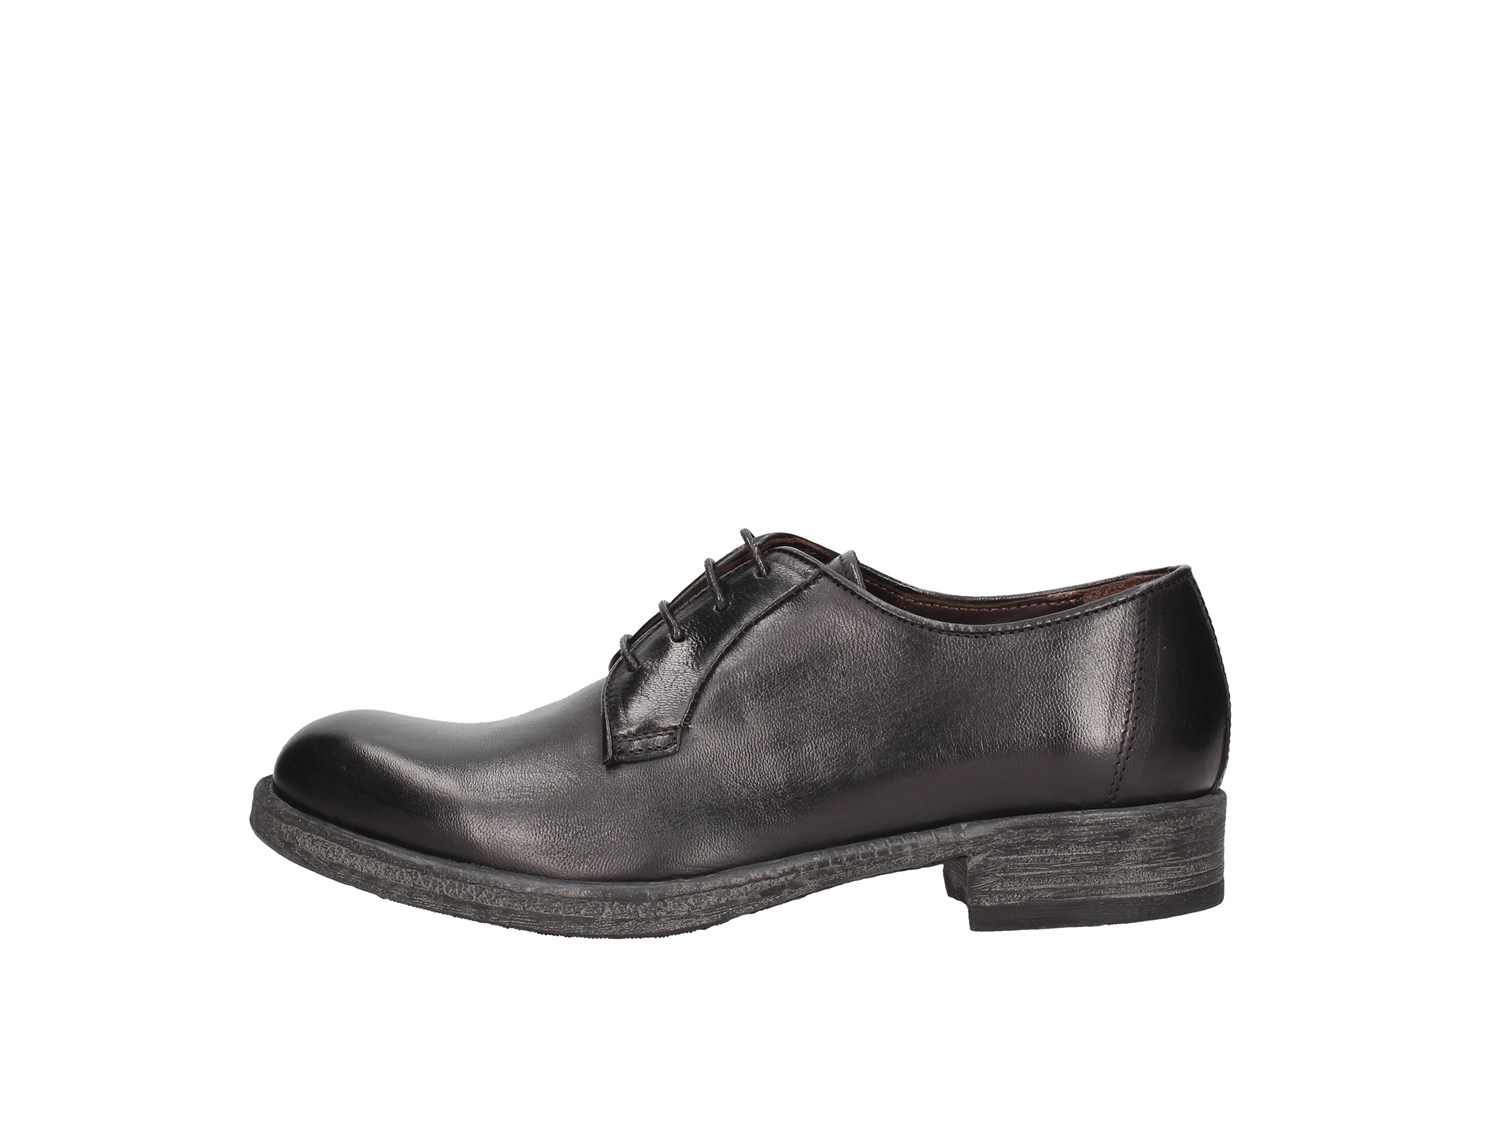 Arcuri D400-8 Black Shoes Women Francesina